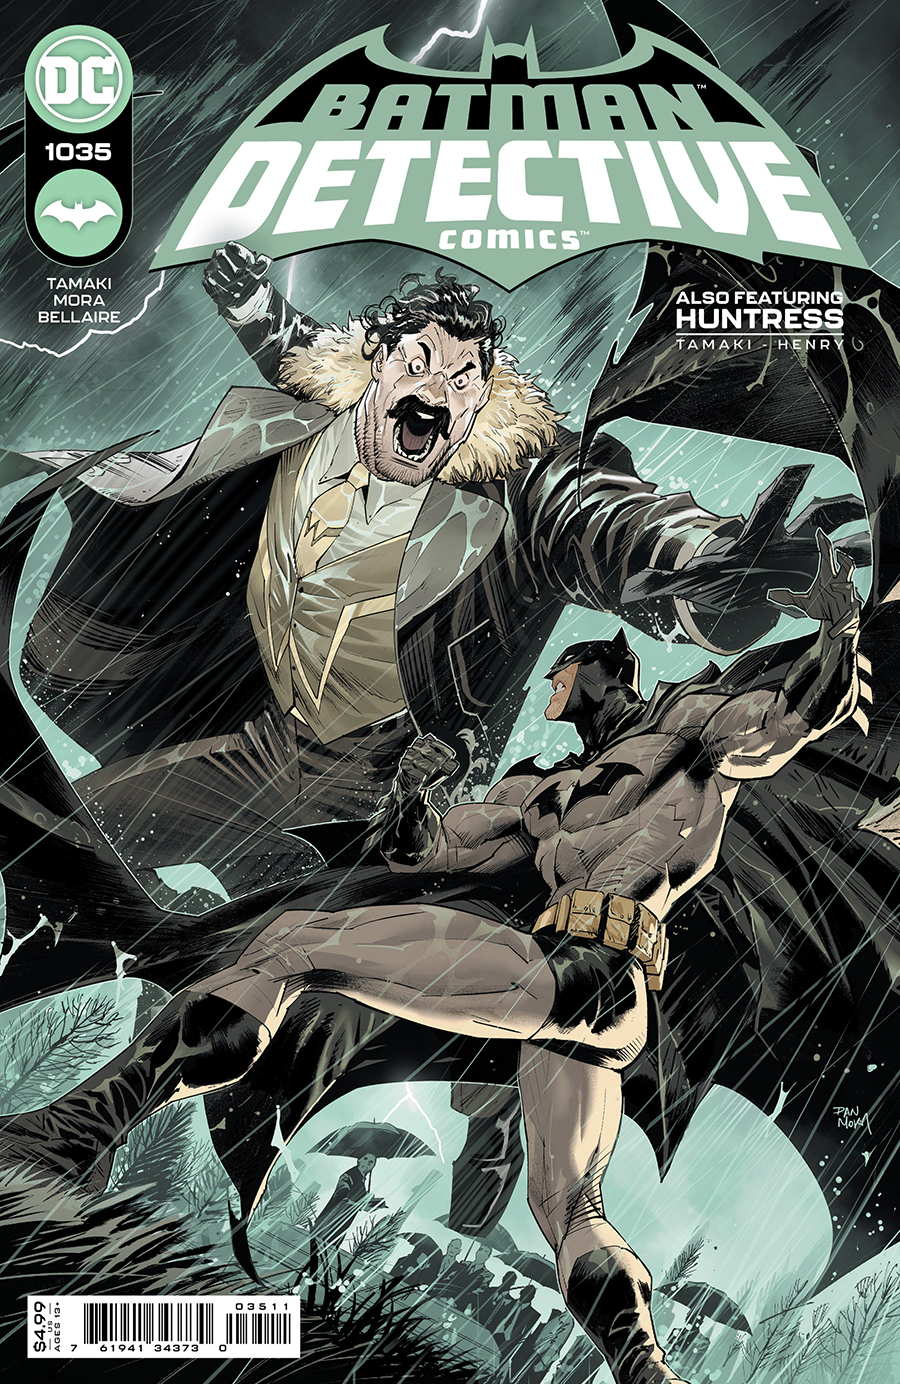 Detective Comics #1035 Cover A Dan Mora (1937)